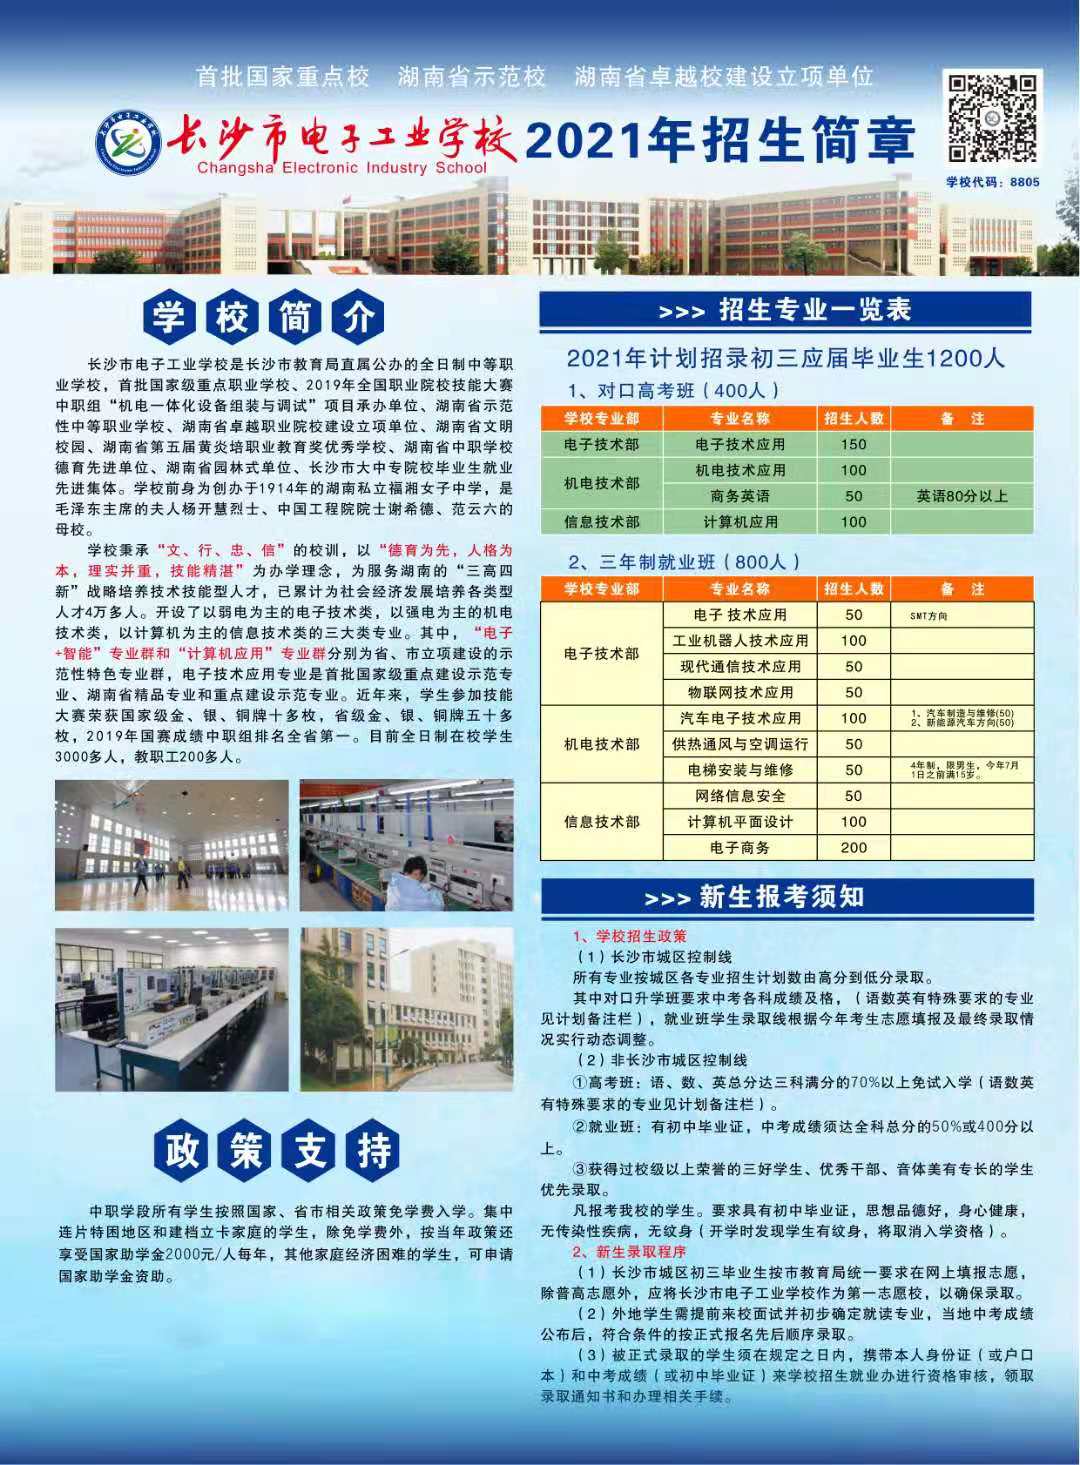 长沙市电子工业学校2021年招生简章